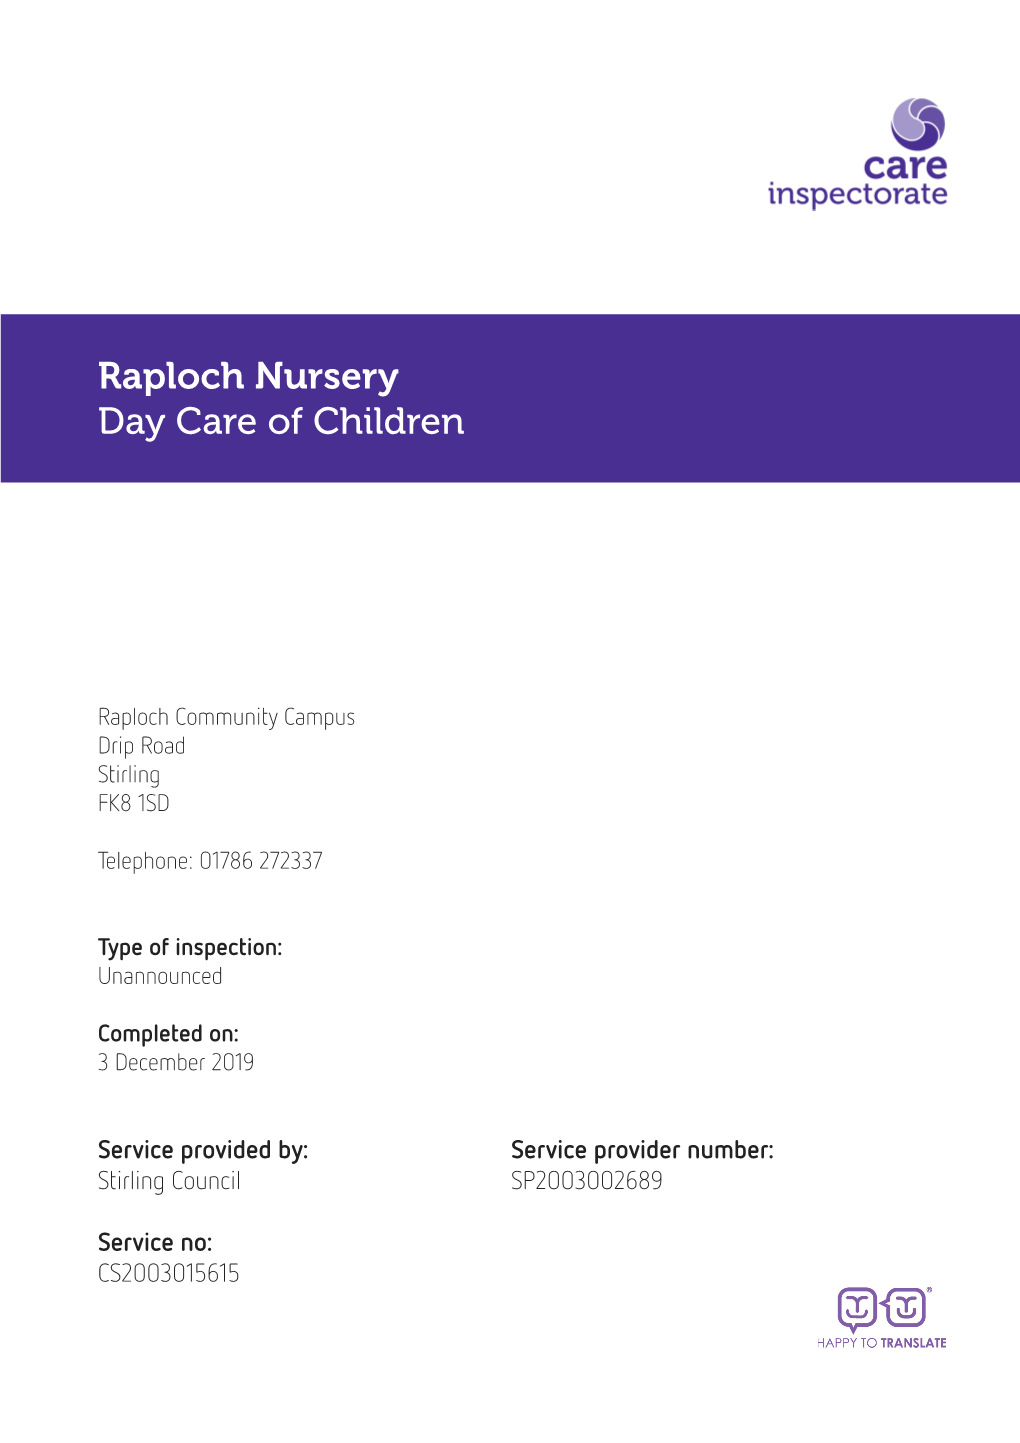 Raploch Nursery Day Care of Children